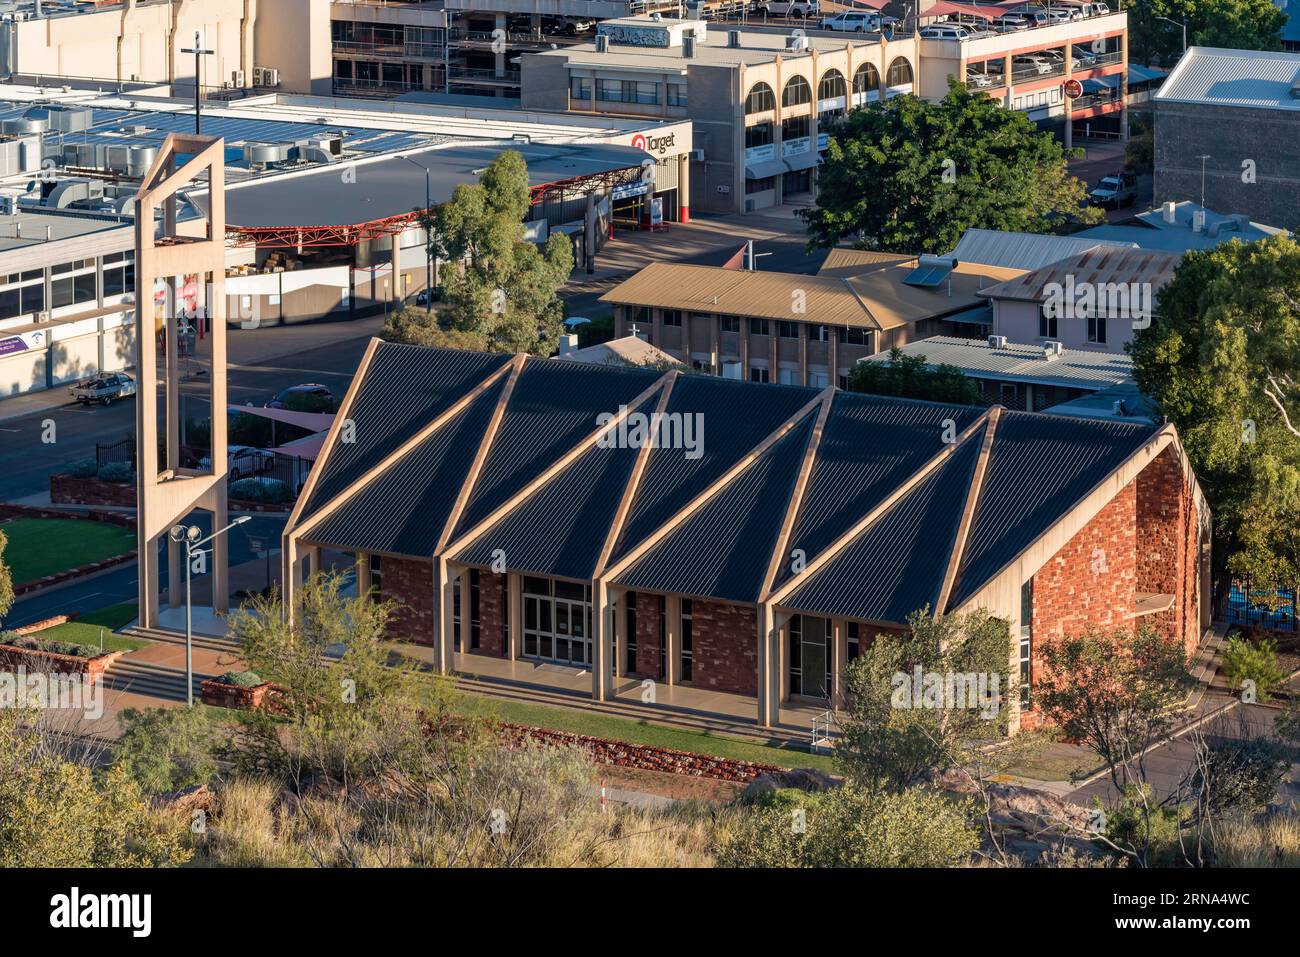 Blicken Sie auf die katholische Kirche Our Lady of the Sacred Heart in Alice Springs, Northern Territory, die 1969 nach einem Entwurf von Andrew McPhee erbaut wurde Stockfoto